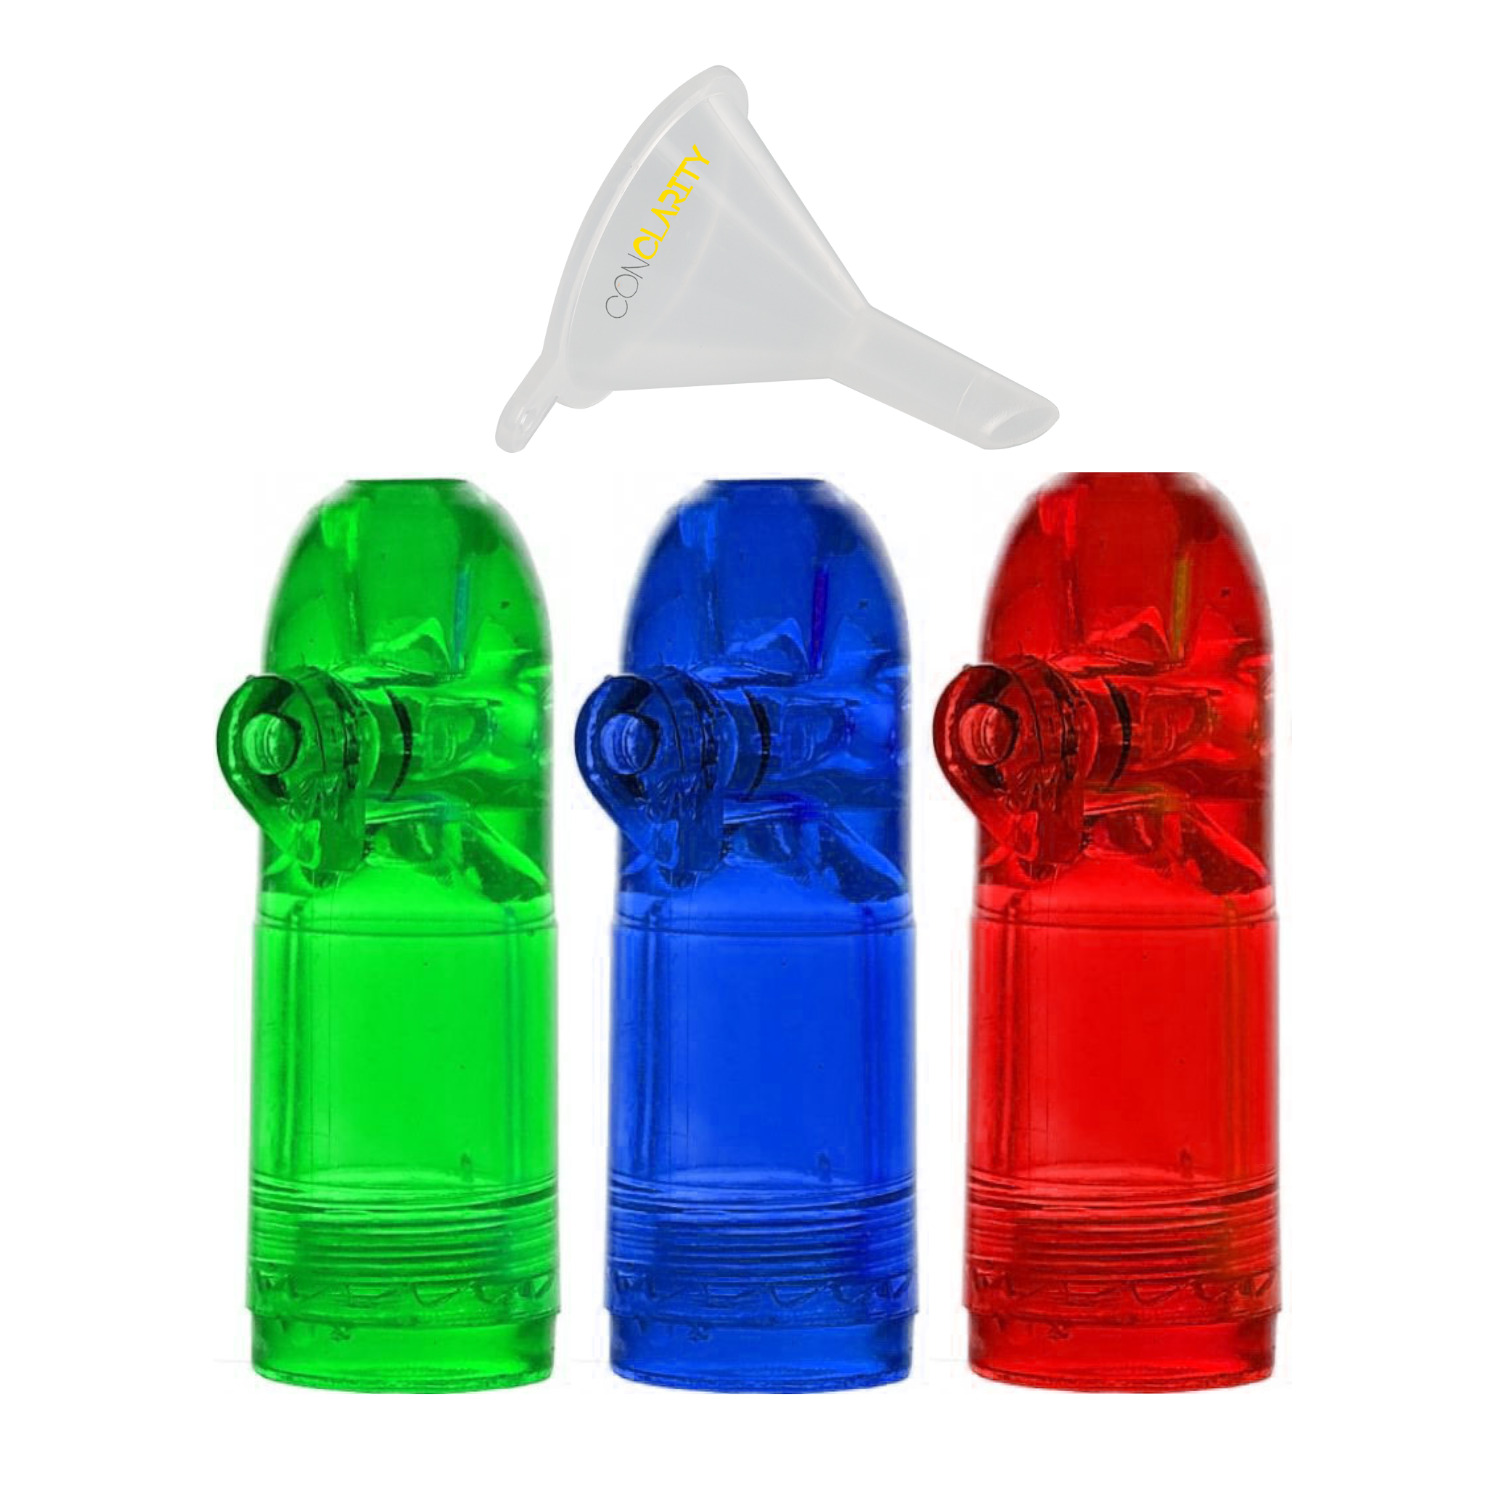 Premium 1.5g Acrylic Pepper Shaker Bullet - 3 Pack